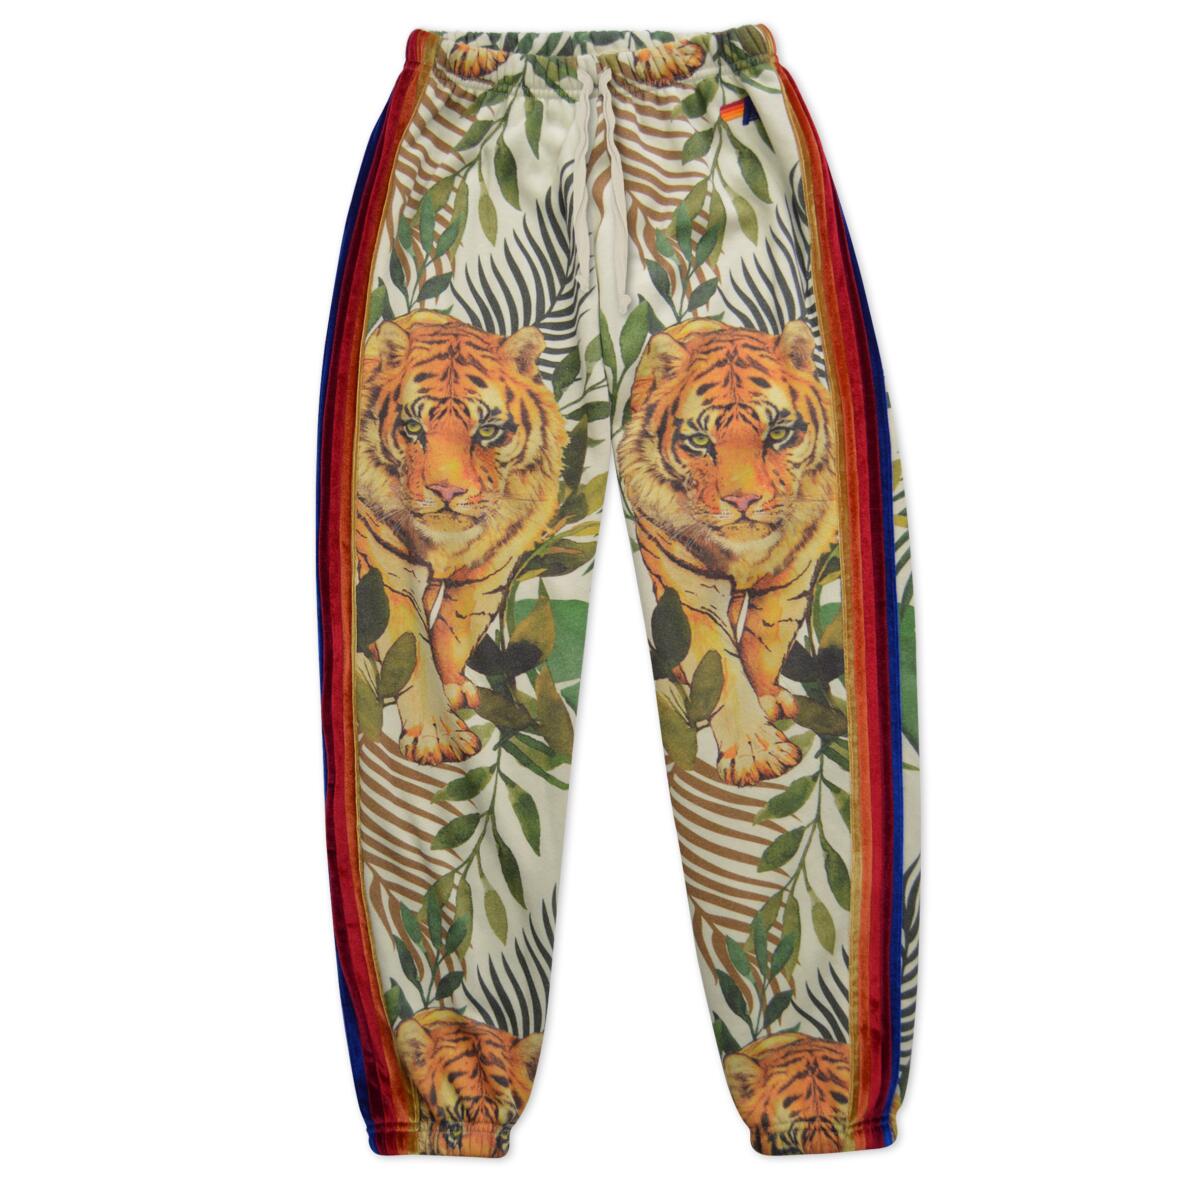 Pantalones deportivos con diseño de tigre y hoja